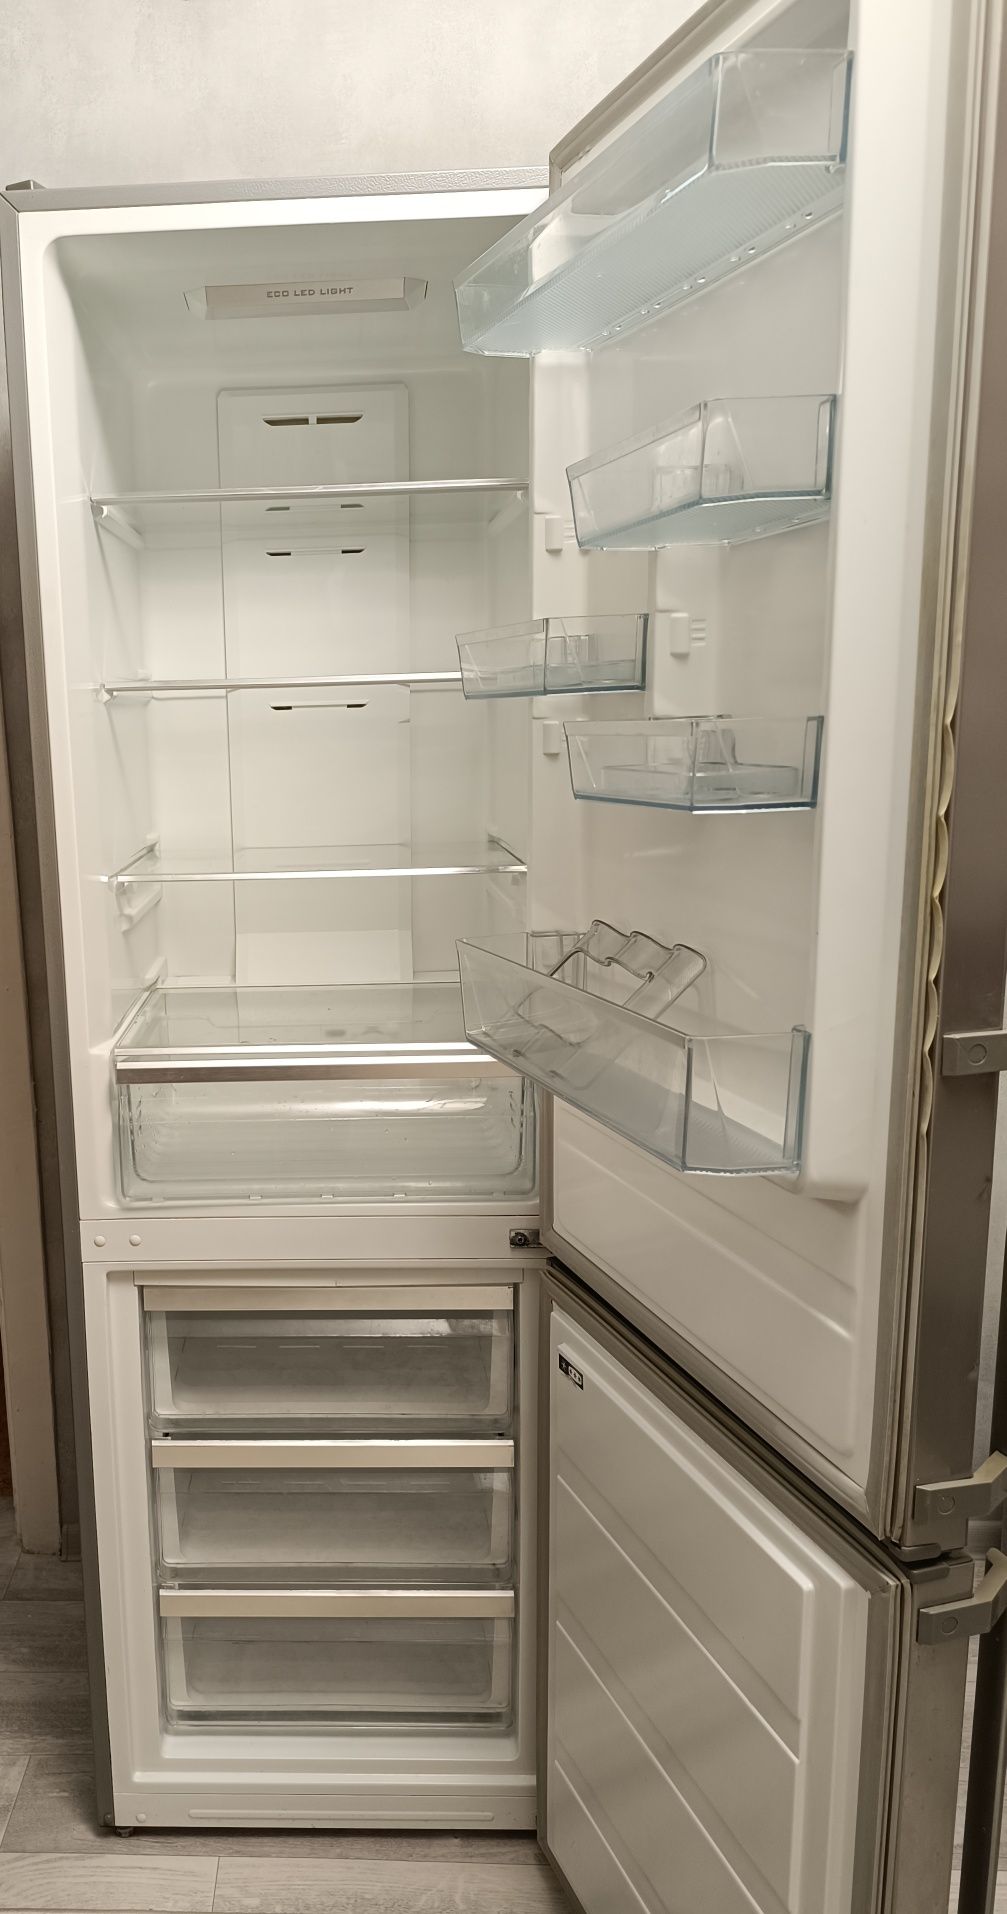 Продам холодильник Midea